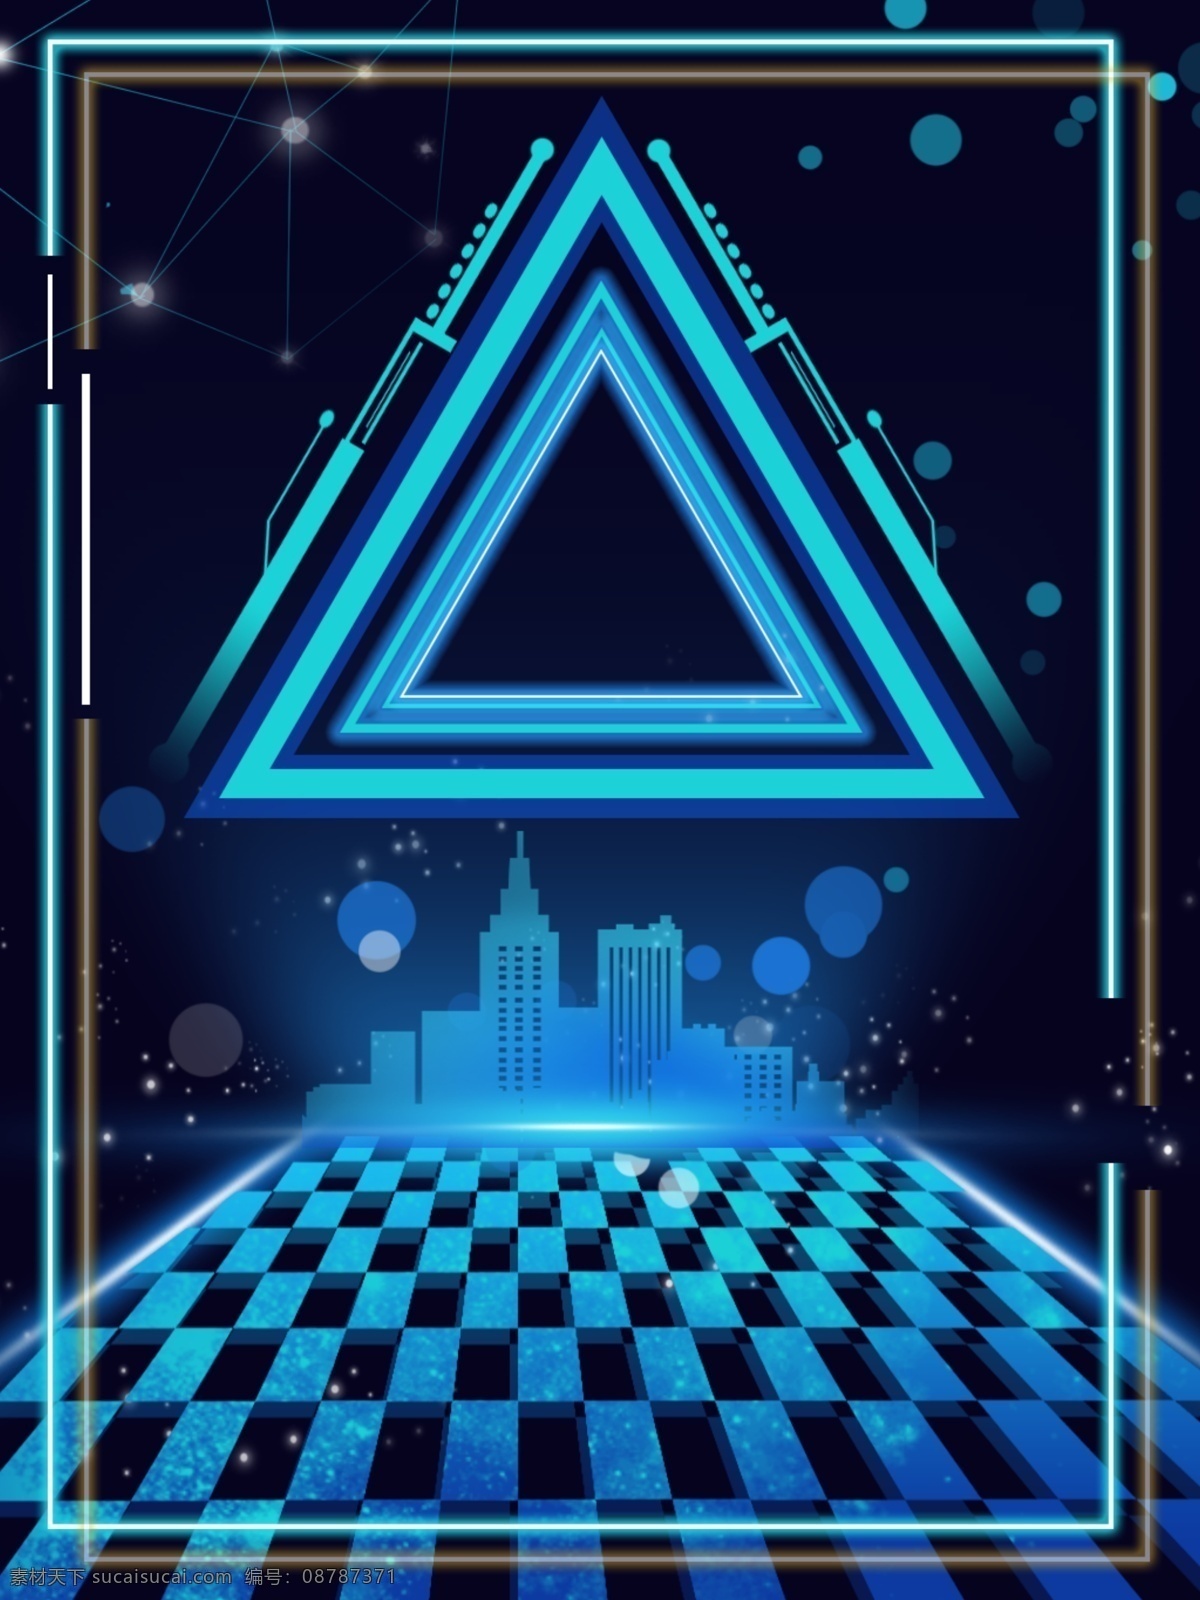 原创 三角 智能 科技 城市 背景 光效 蓝色 边框 炫酷 商务 方格 网格